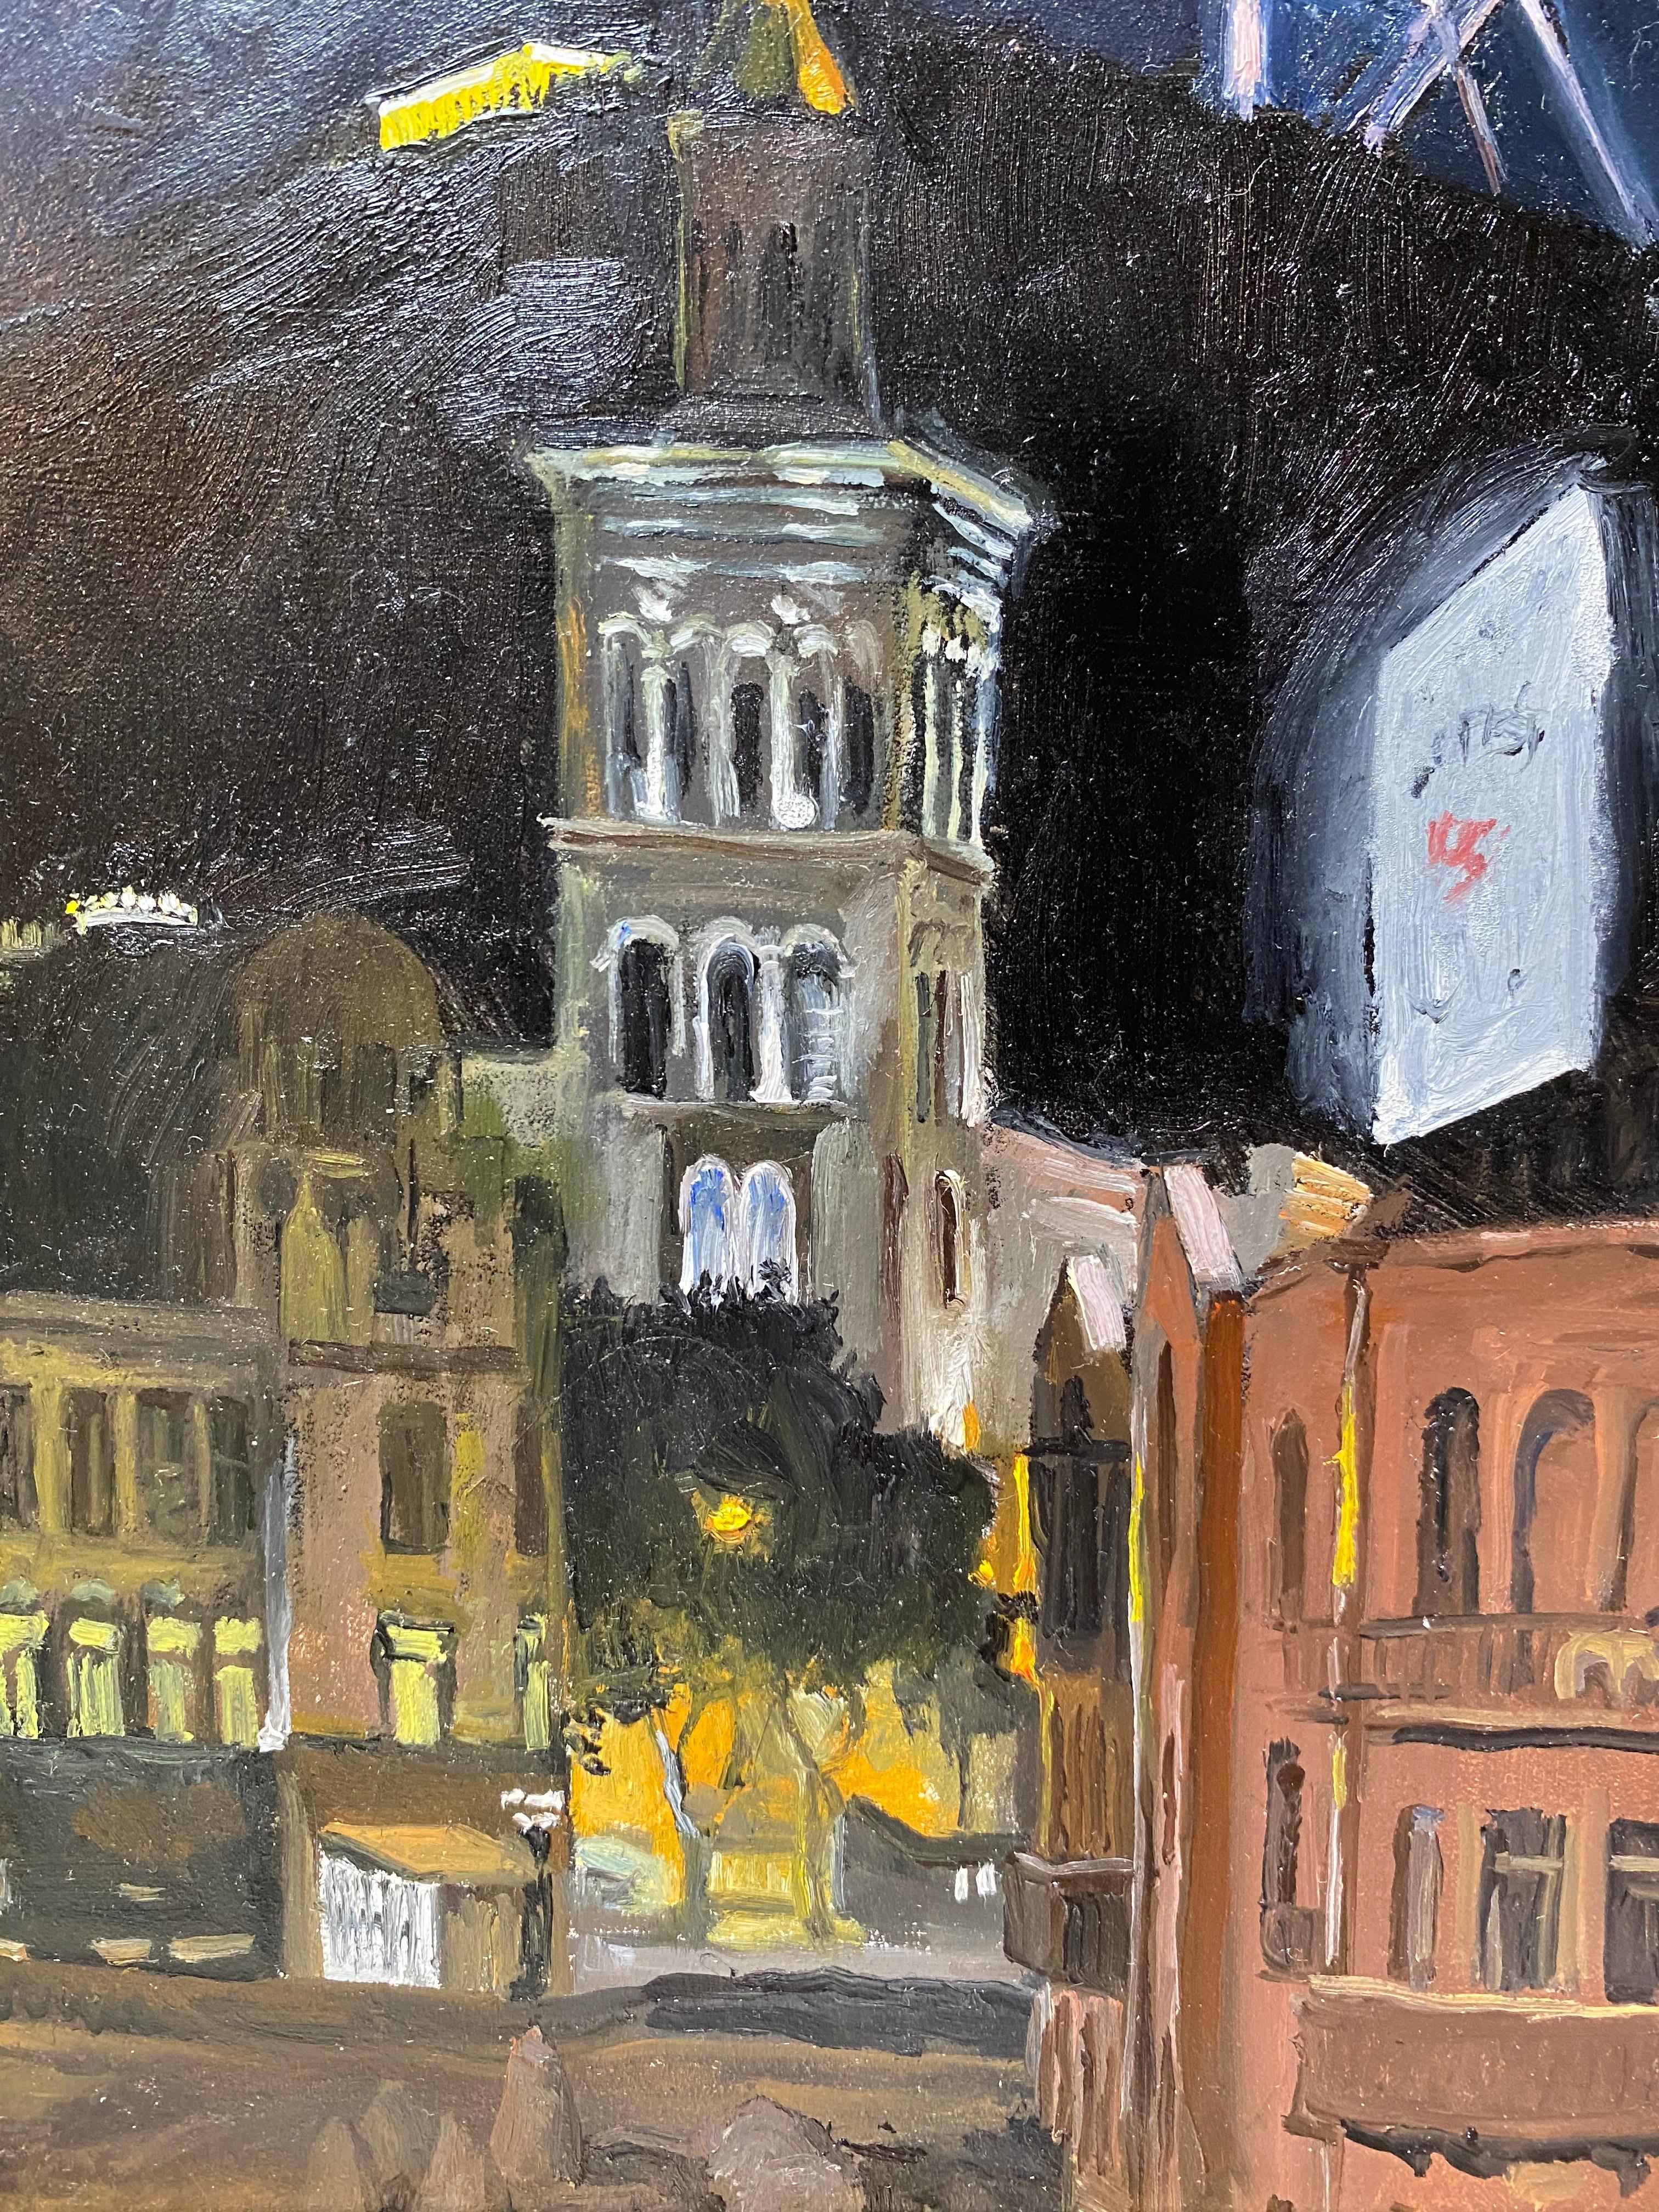 Nach dem Leben gemalt, steht der Künstler an einer Straßenecke und blickt auf drei Gebäude, die von Straßenlaternen beleuchtet werden. Hinter der Stadt erhebt sich eine dunkle Masse, ein Hügel, der sich gegen den vergleichsweise helleren blauen